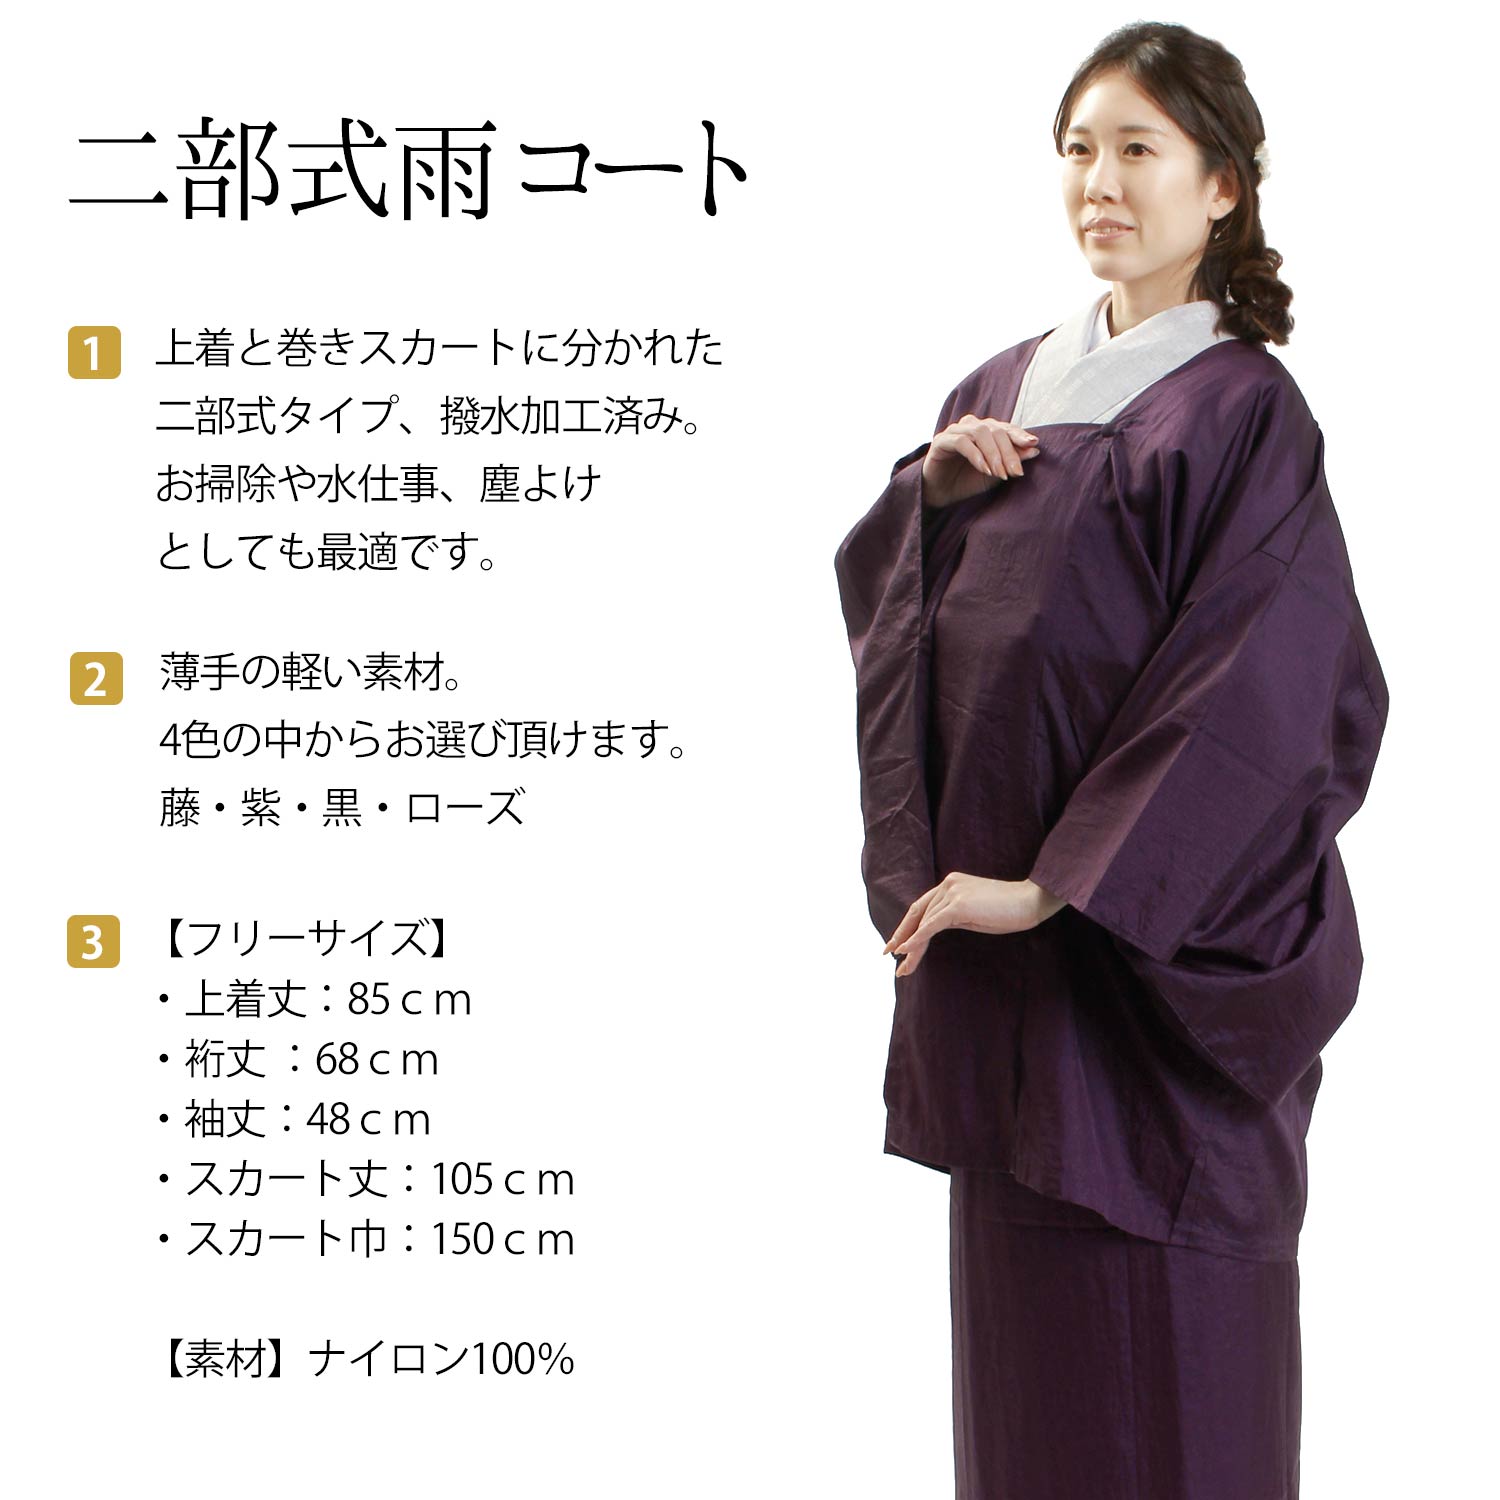 【楽天市場】雨コート 二部式 撥水加工 フリーサイズ 4色 藤 紫 黒